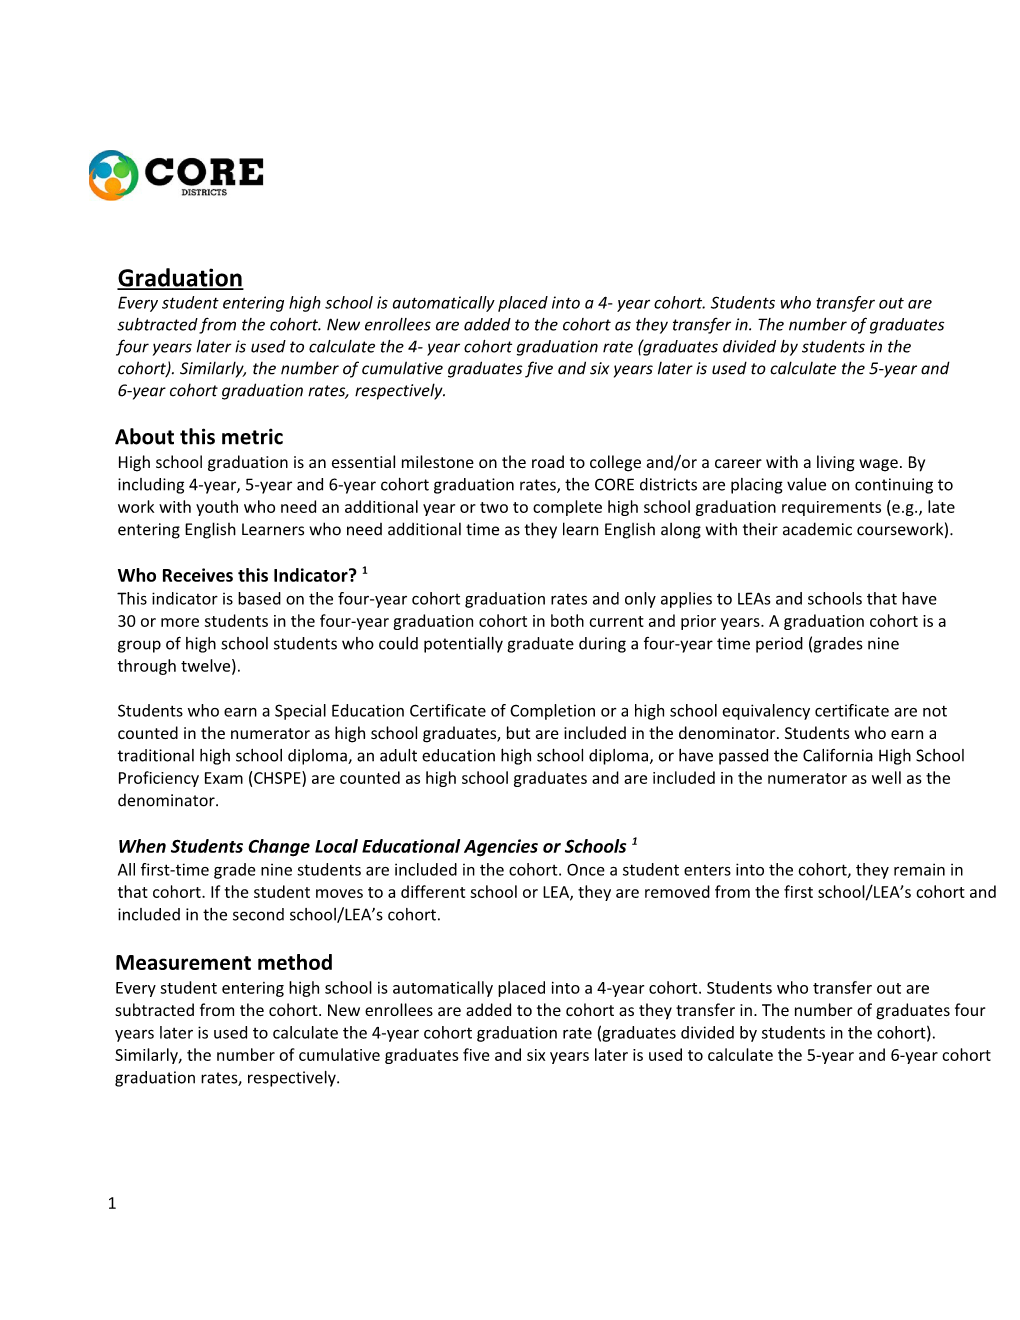 SE-CC Domain - School Culture & Climate Surveys (Updated 2.18.15)